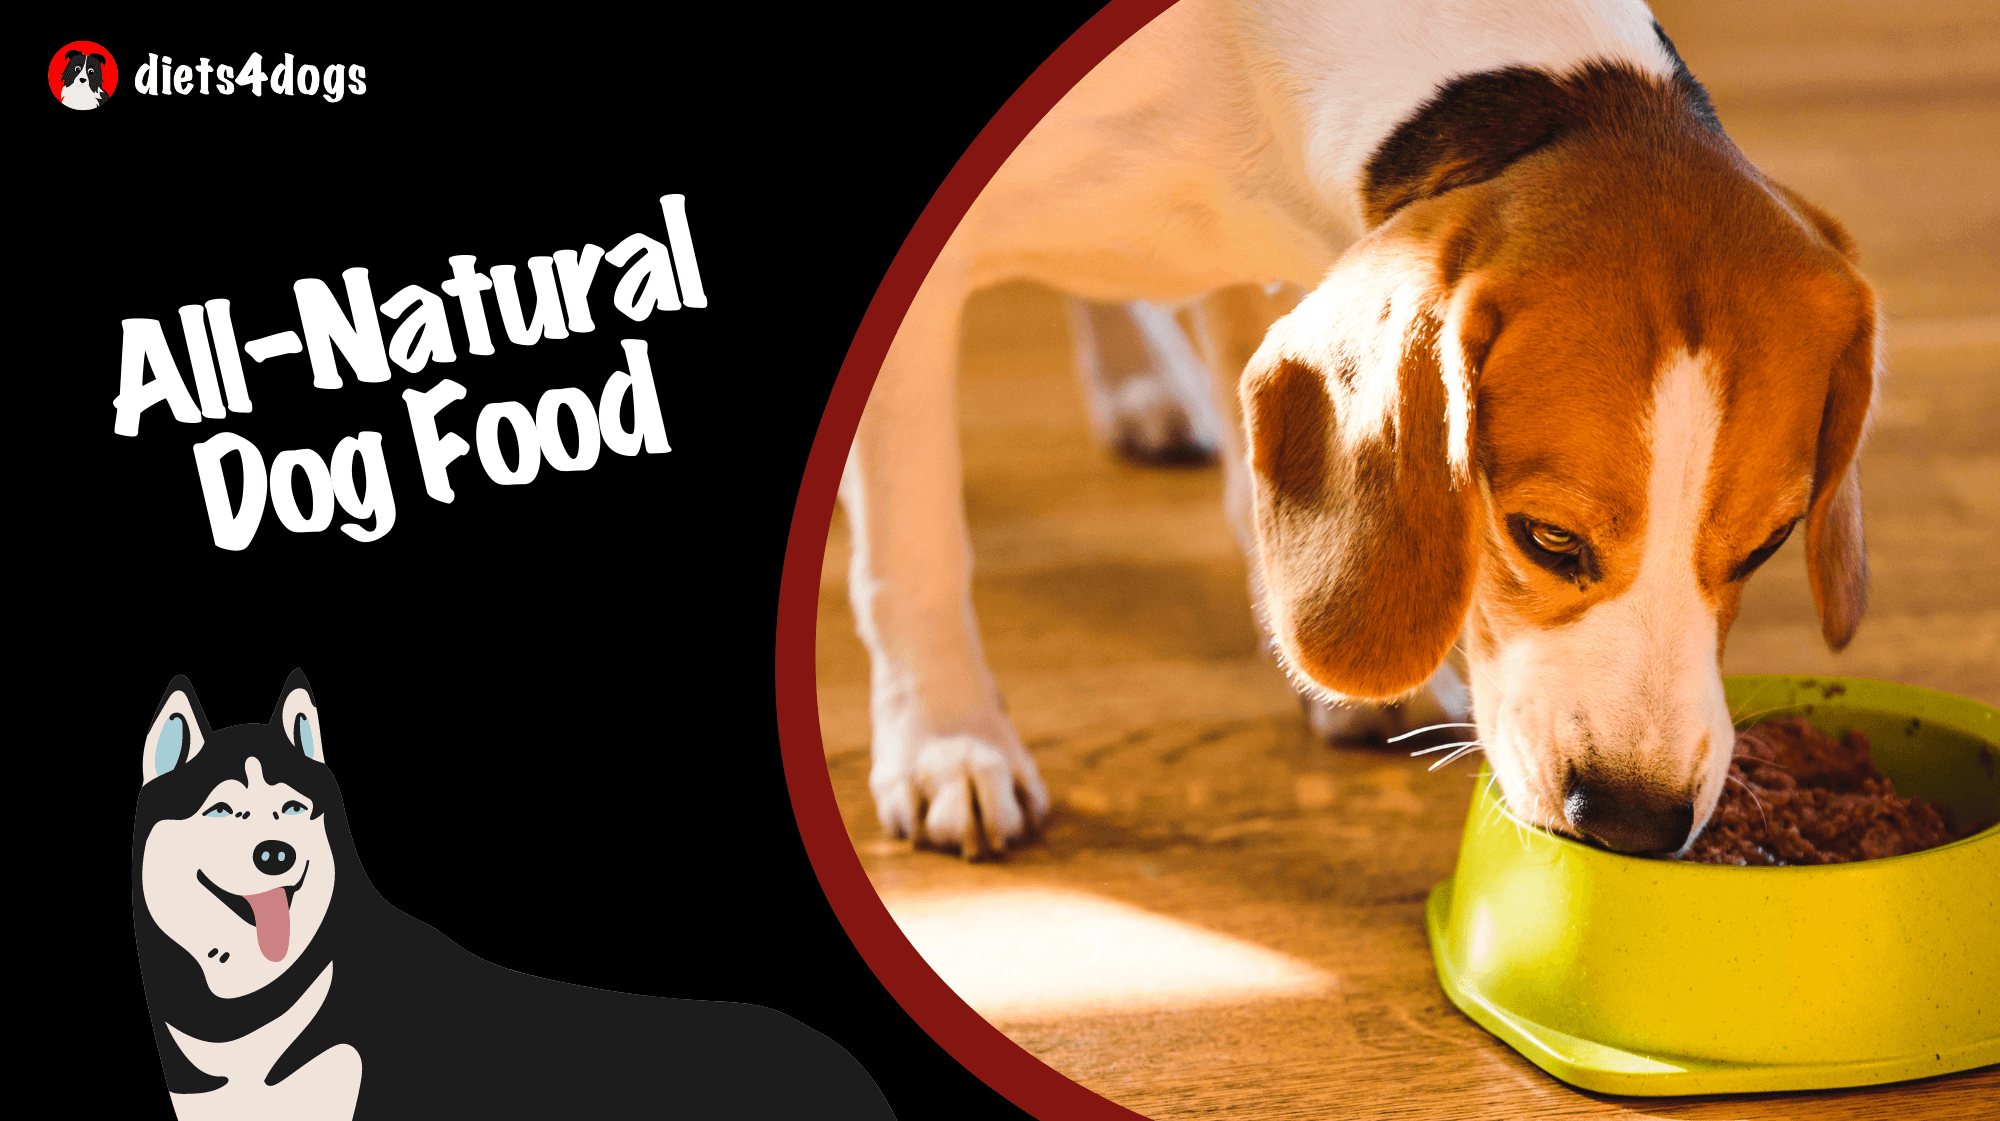 All-Natural Dog Food